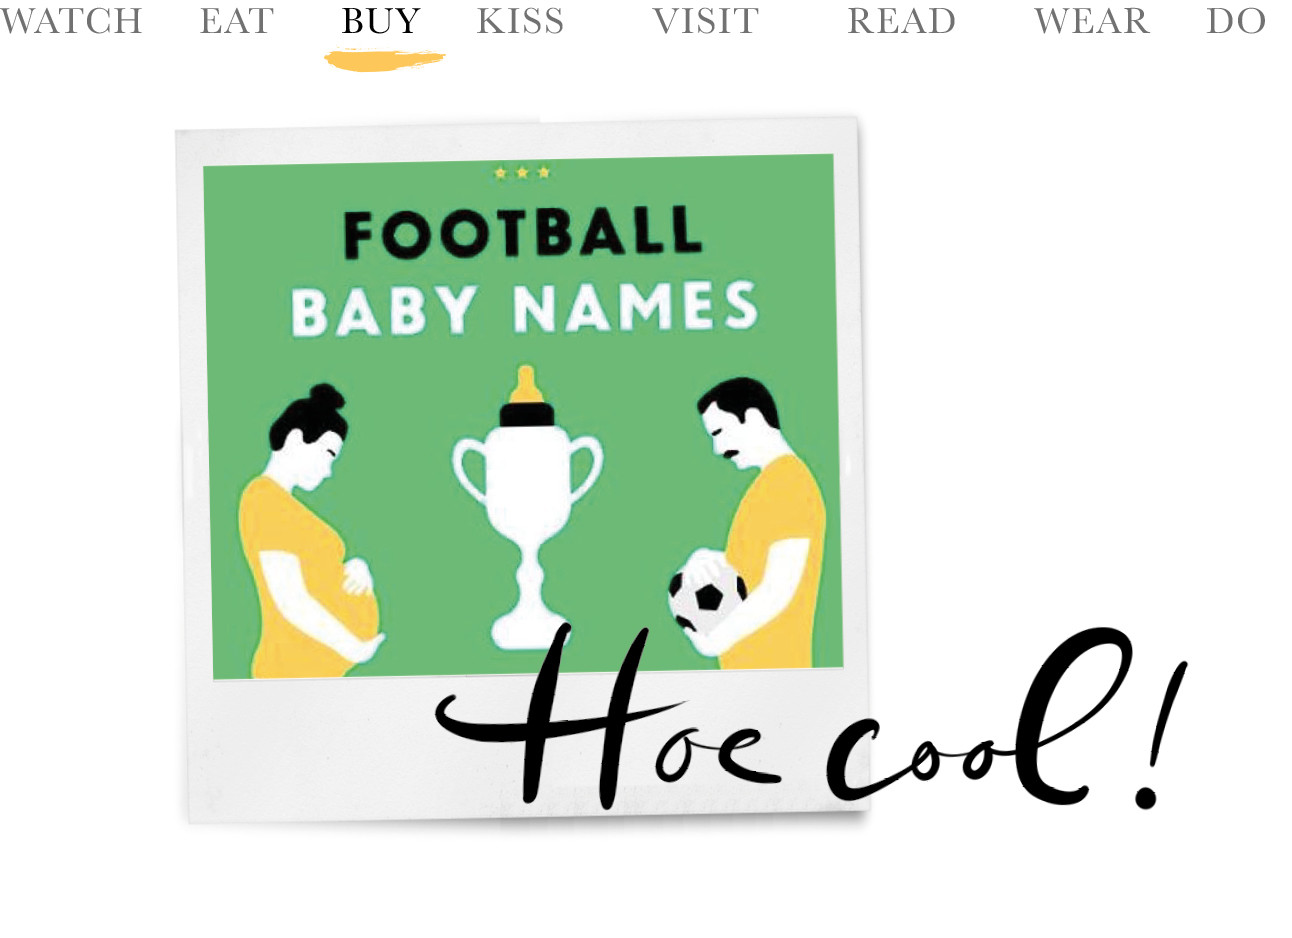 today we buy footbal baby names groene cover met gele illustraties hoe cool